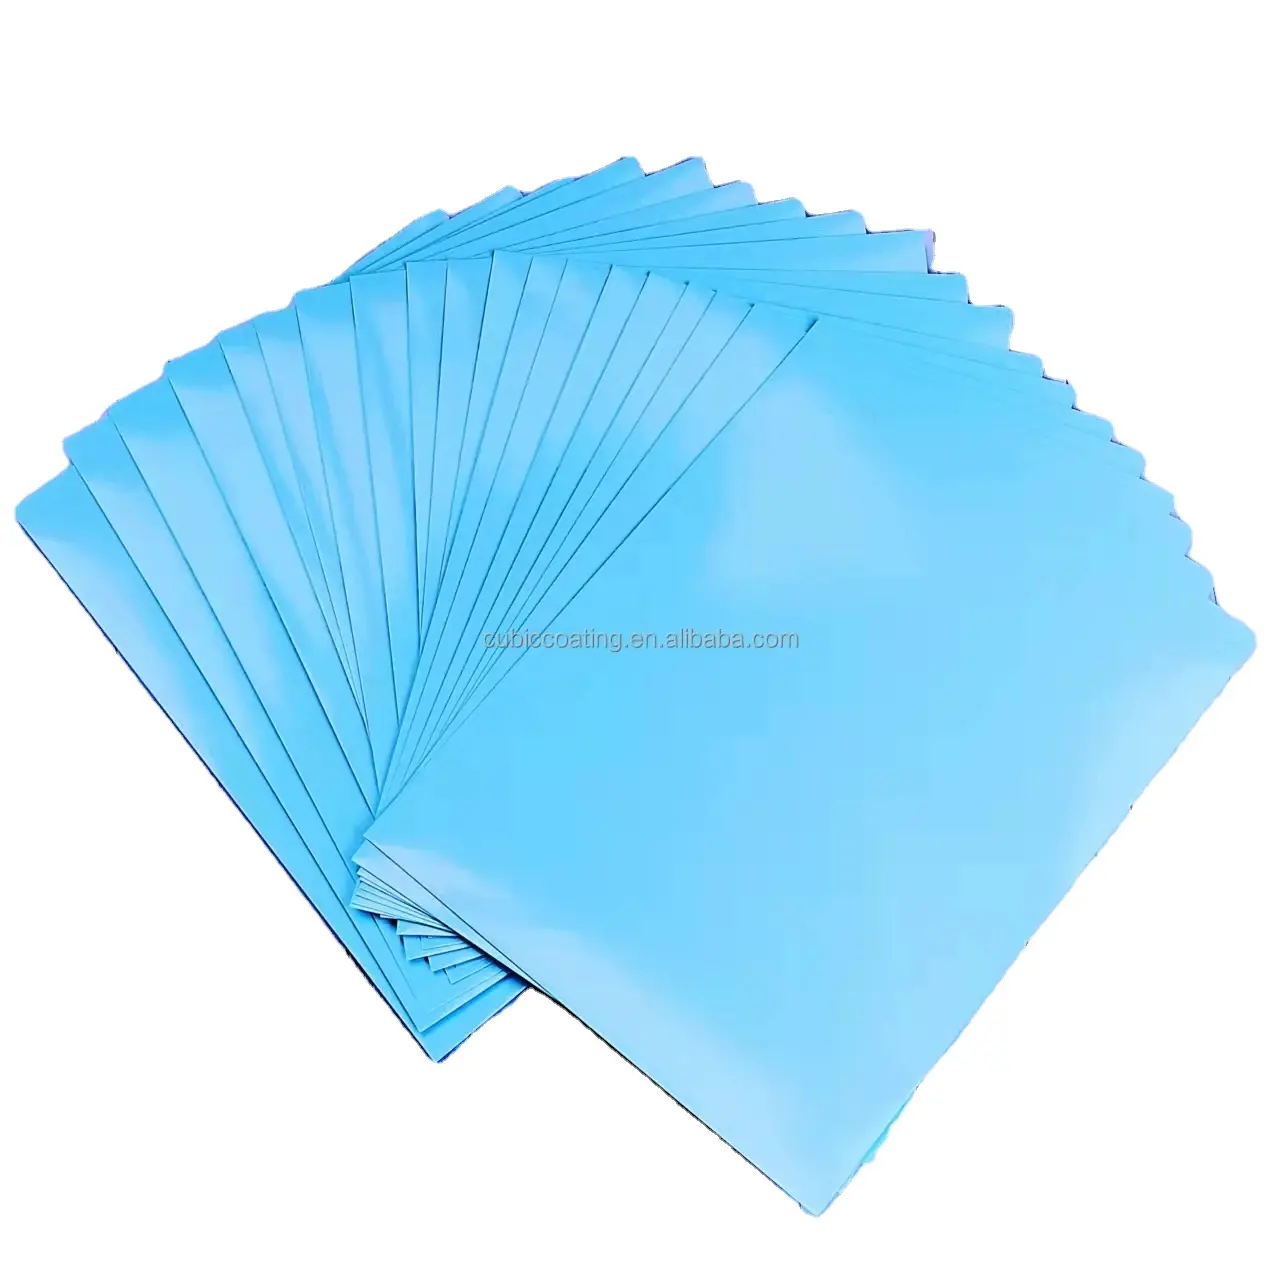 Sachets de papier A4 impression pour transfert d'eau, autocollants de côté avec étiquette transparente/claire, format laser, 20 feuilles/sac